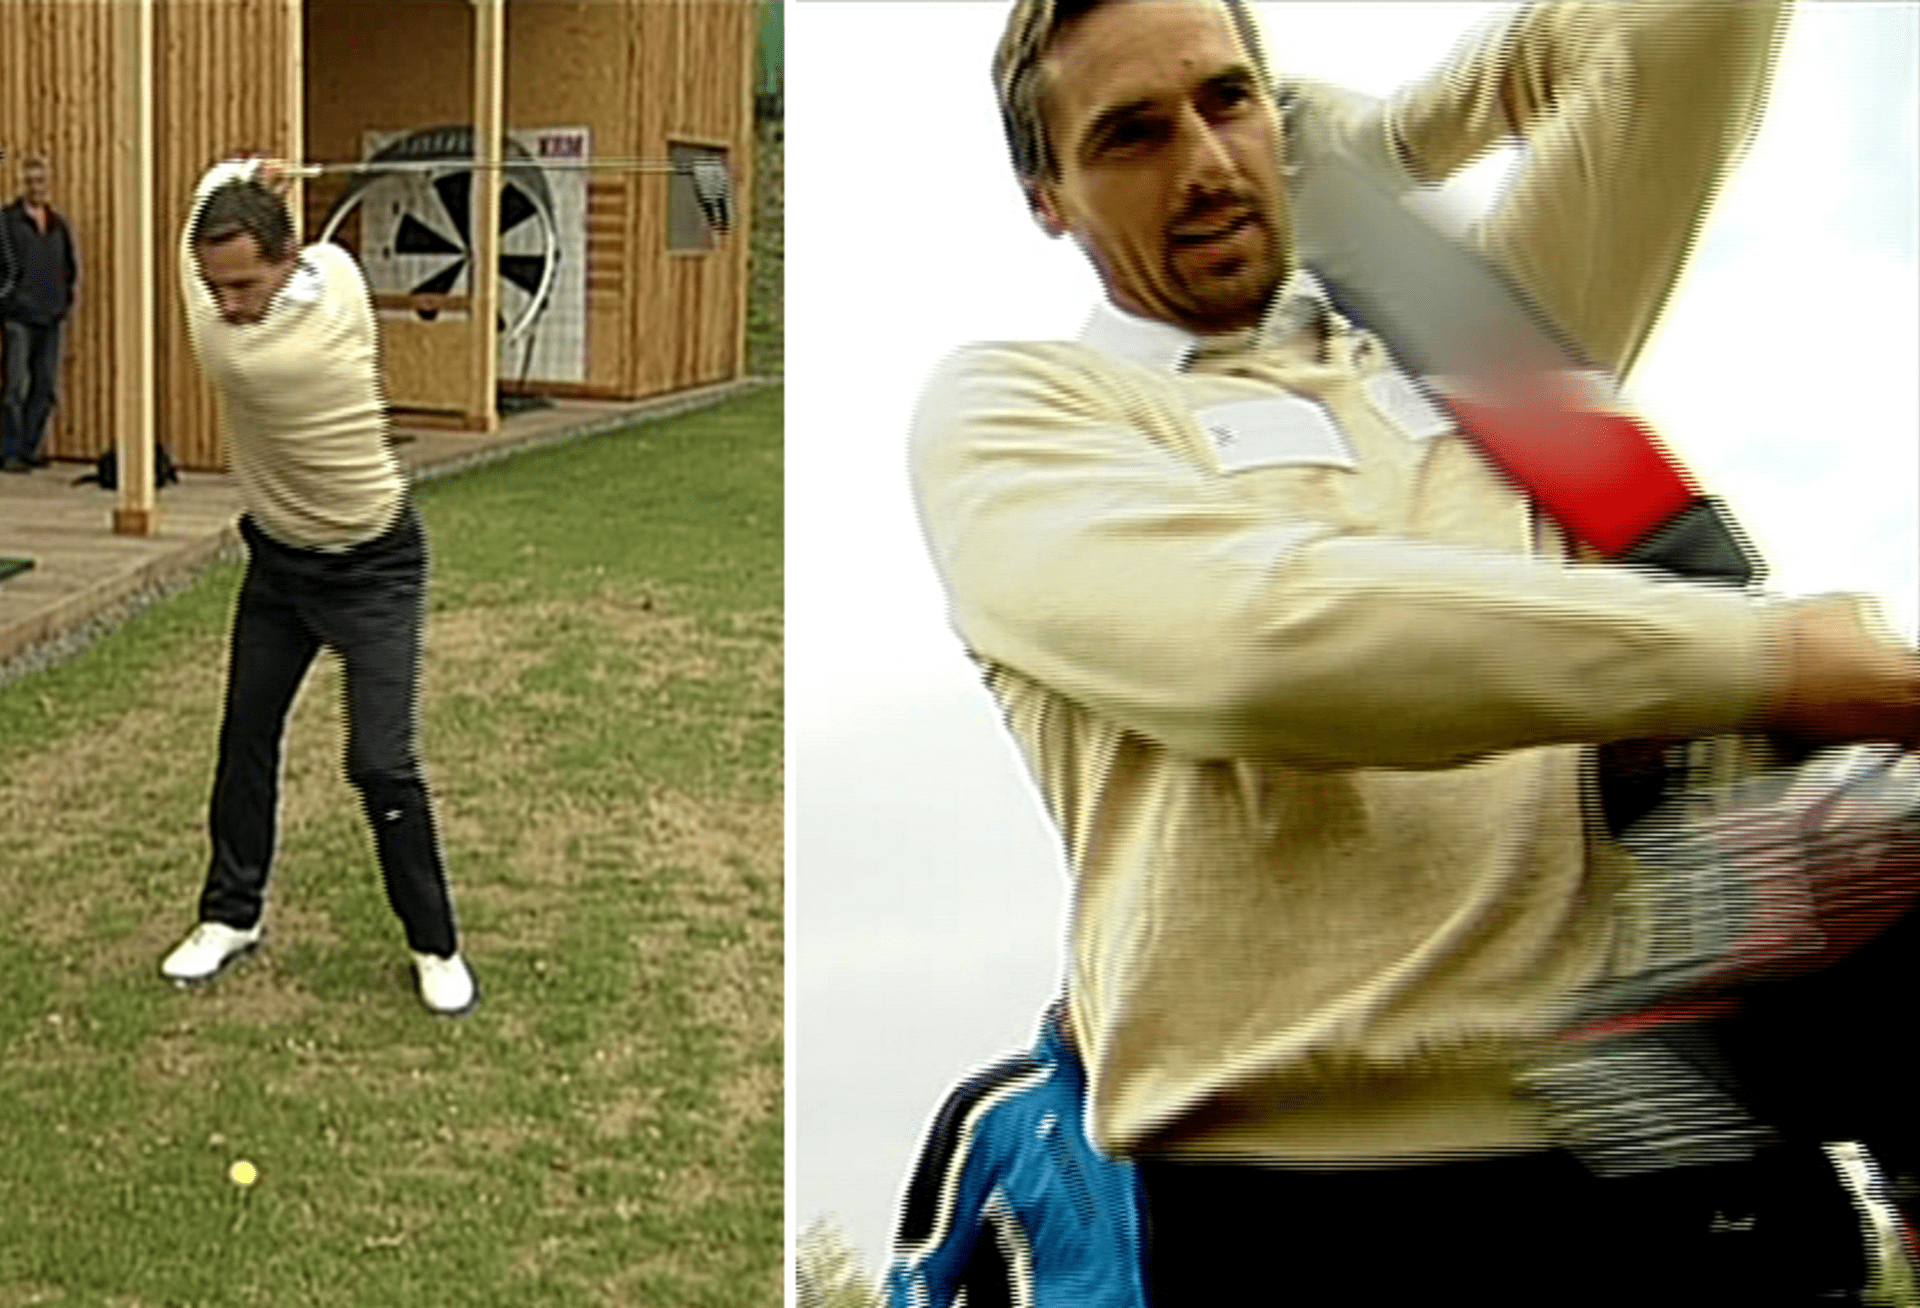 Video VIP zprávy: Olympionik Šebrle propadl golfu. Souhlasí s tím jeho žena?